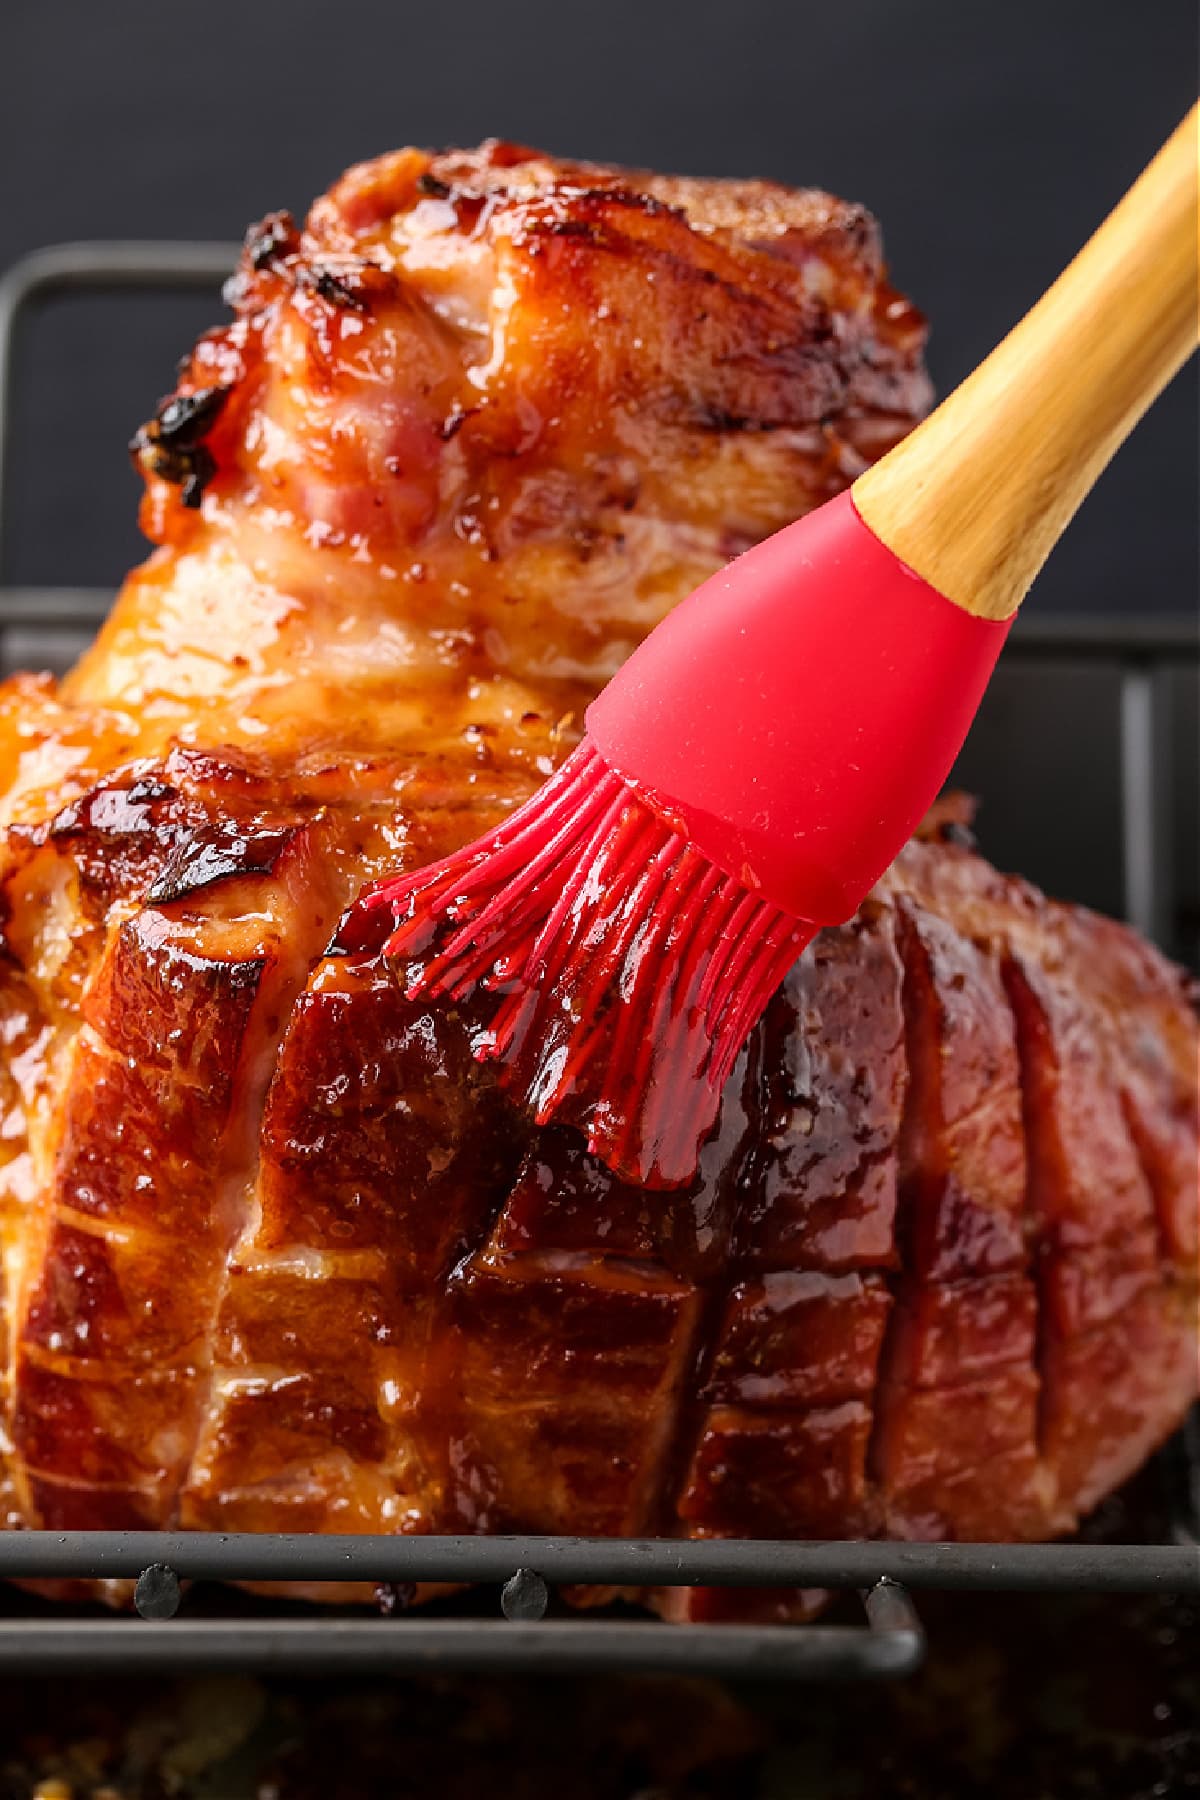 brushing glaze on baked ham